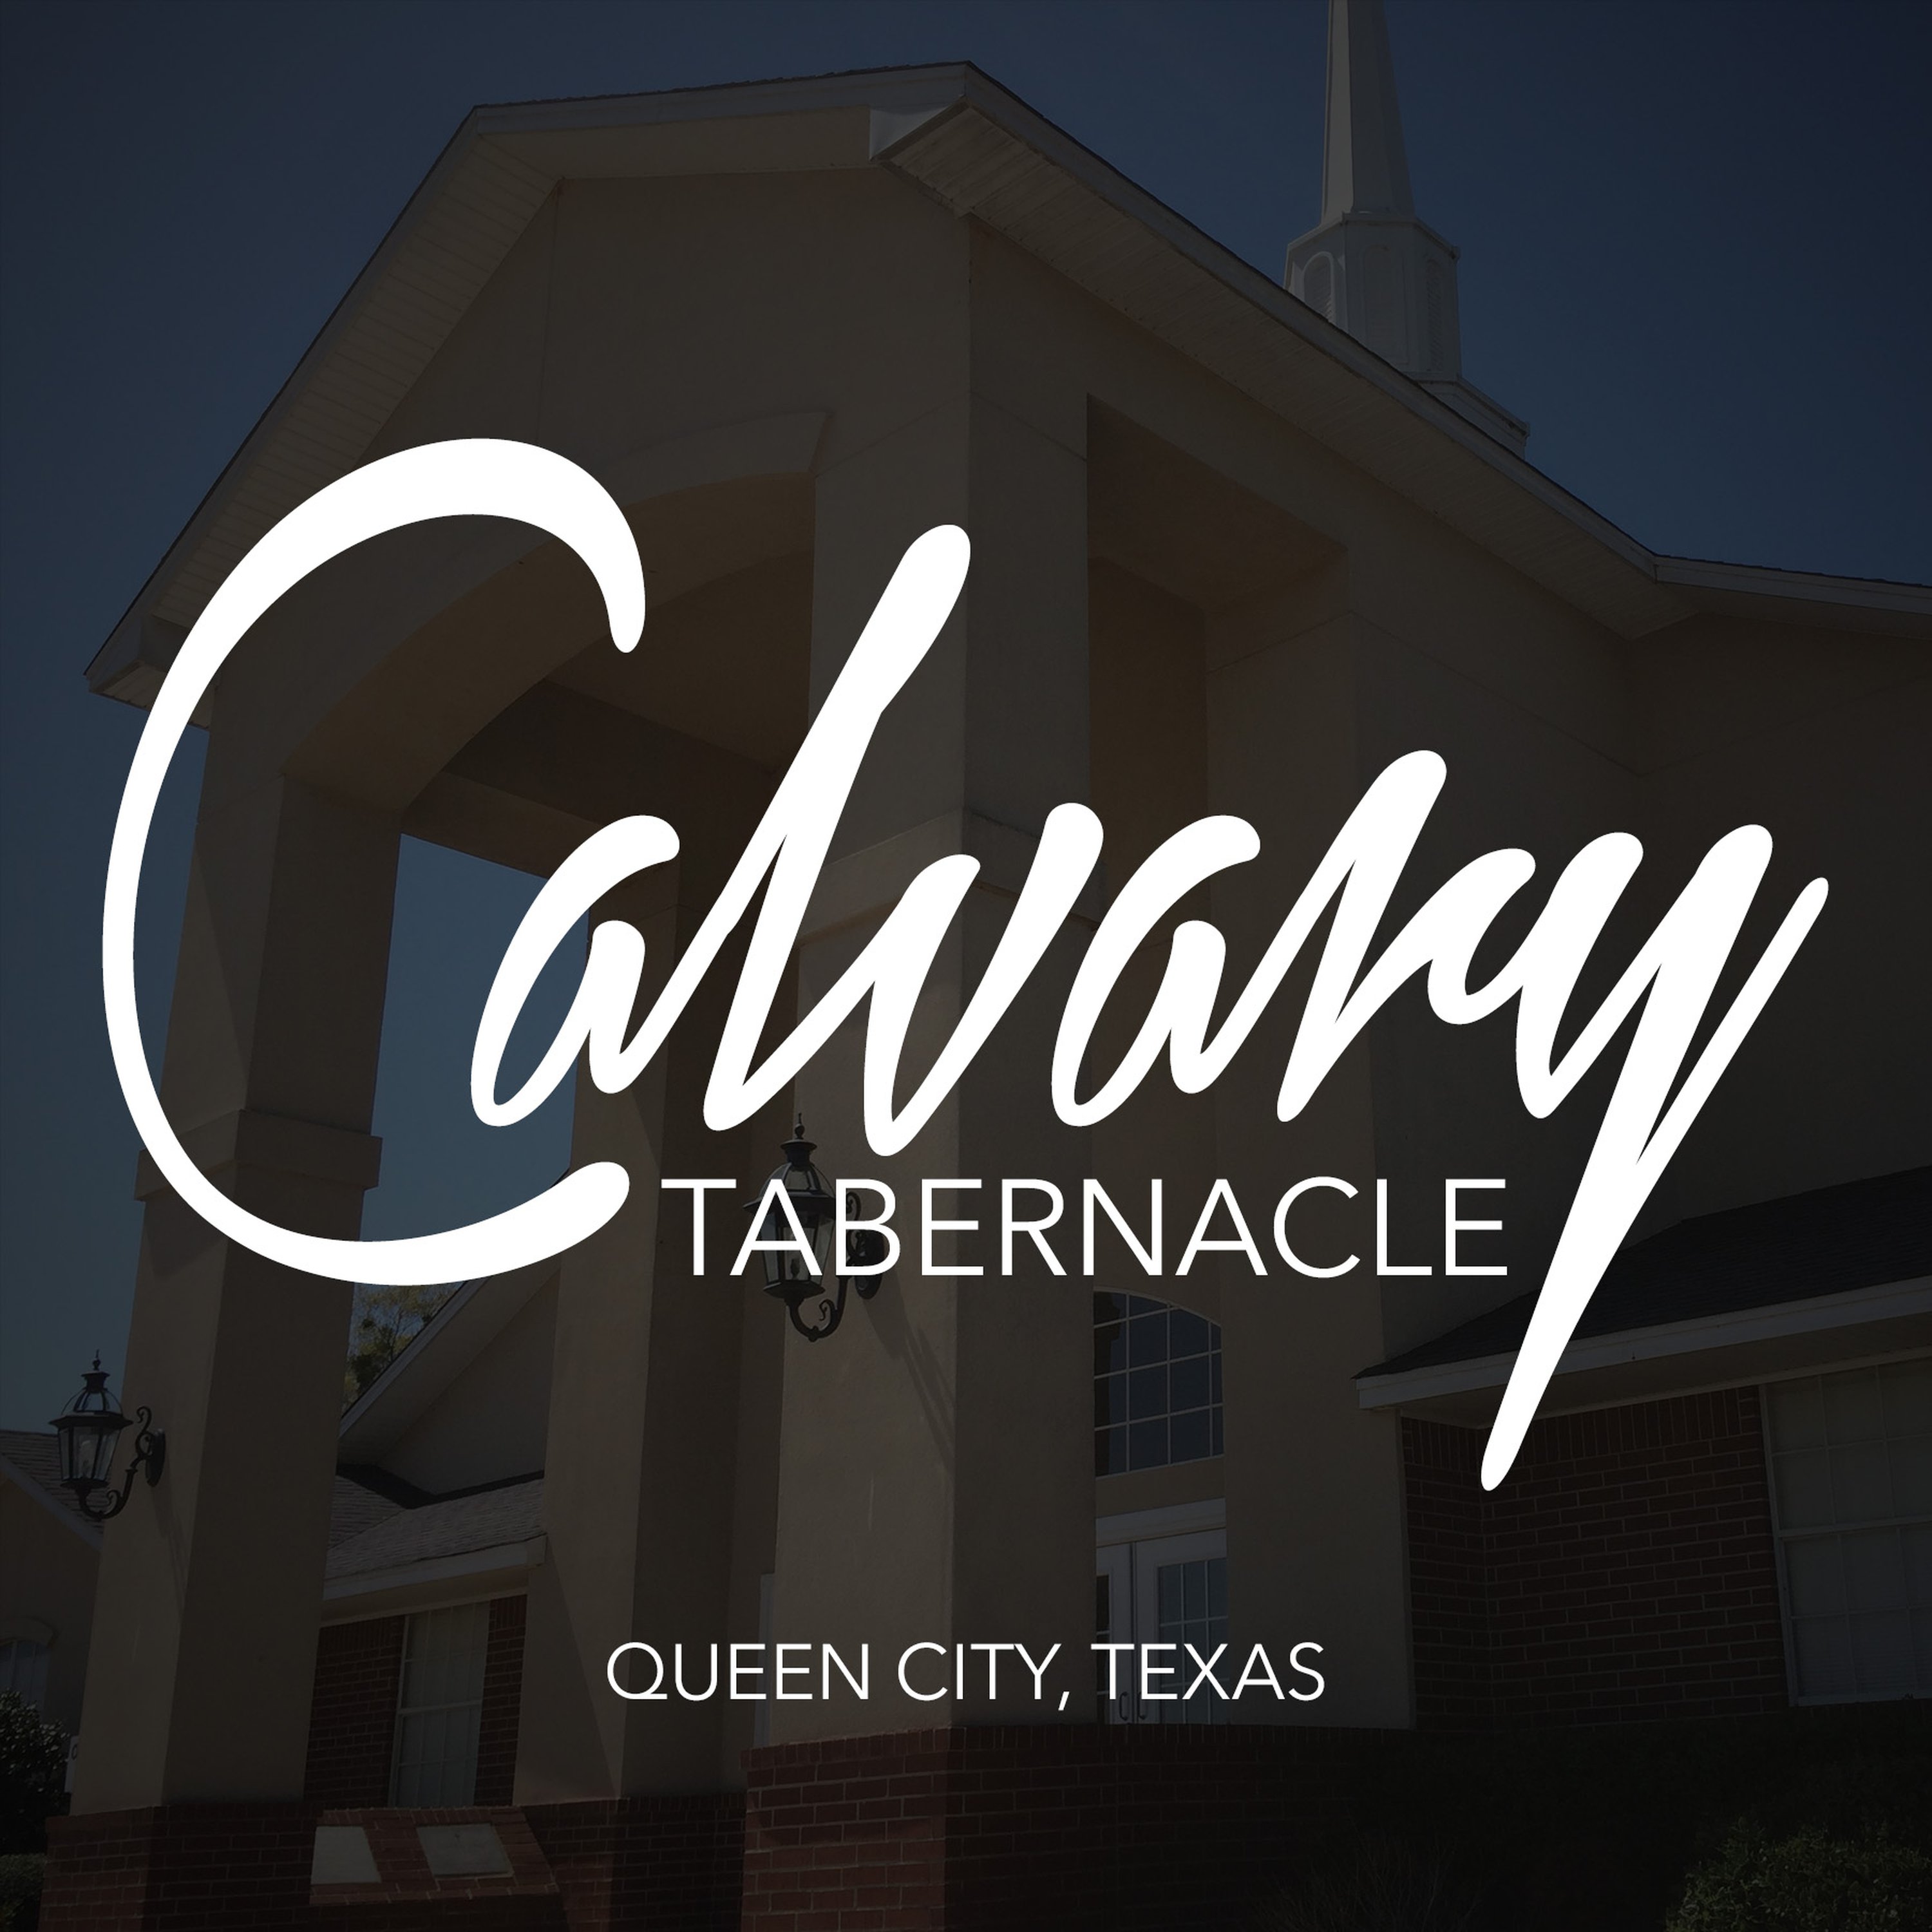 Calvary Tabernacle | Queen City, Texas